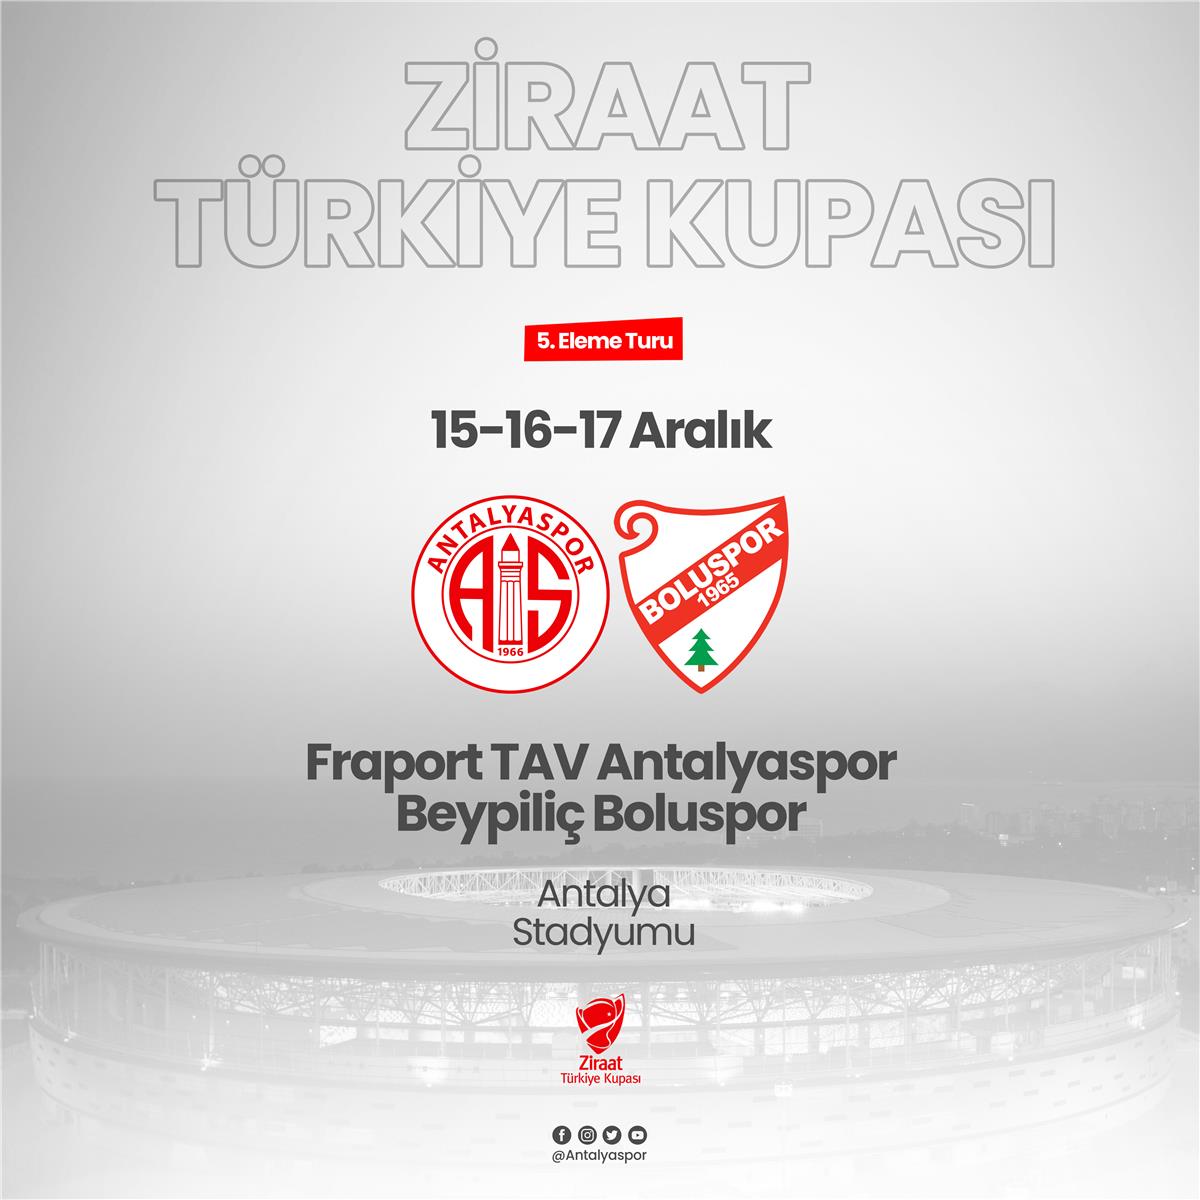 Ziraat Türkiye Kupası'nda Rakibimiz Beypiliç Boluspor